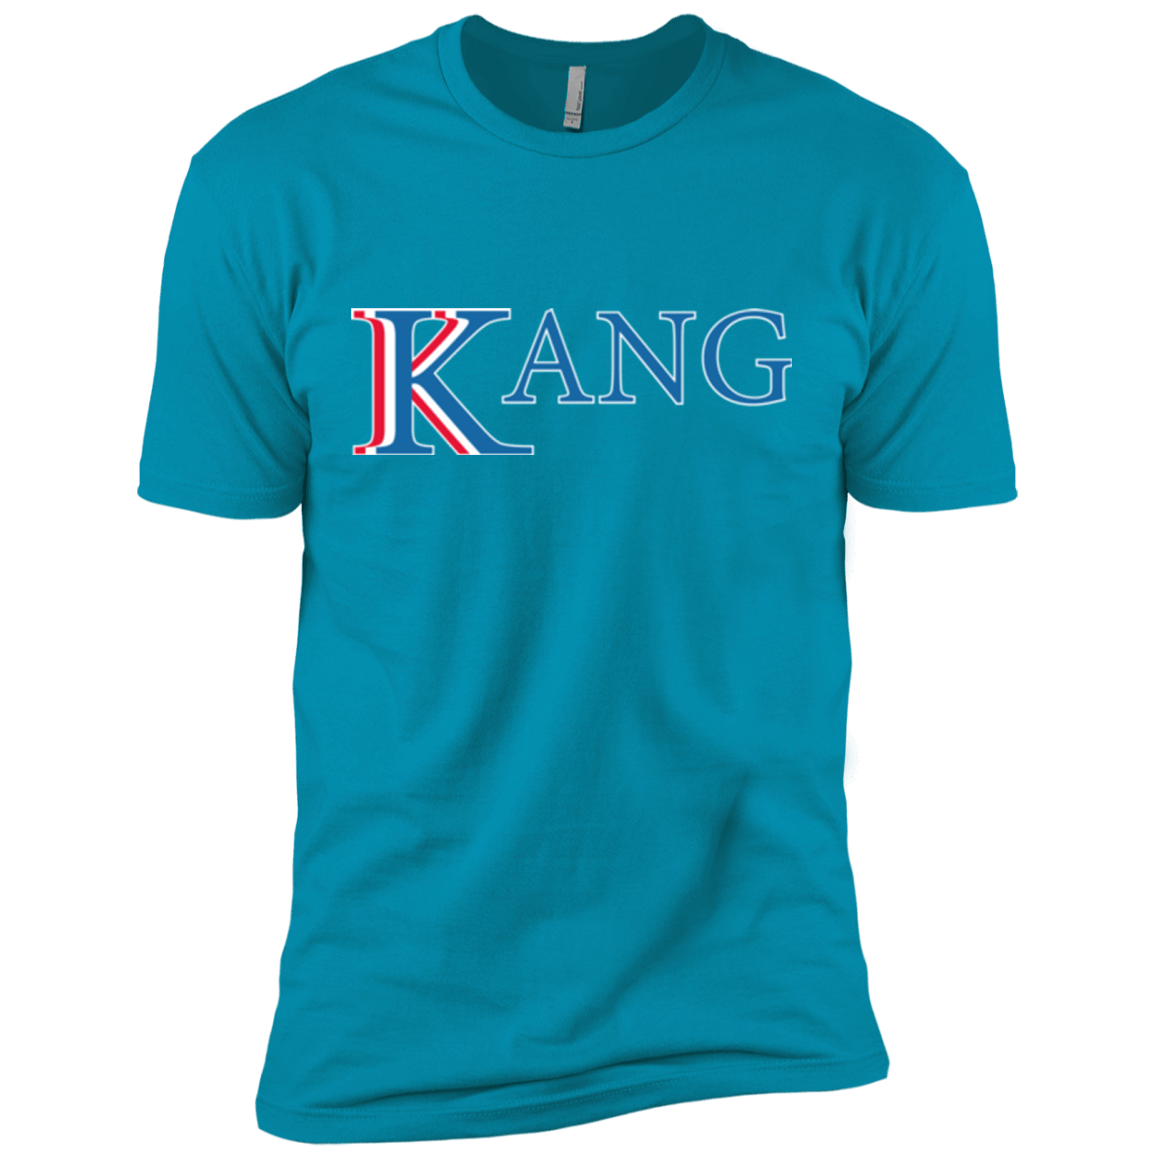 Vote for Kang Men's Premium T-Shirt